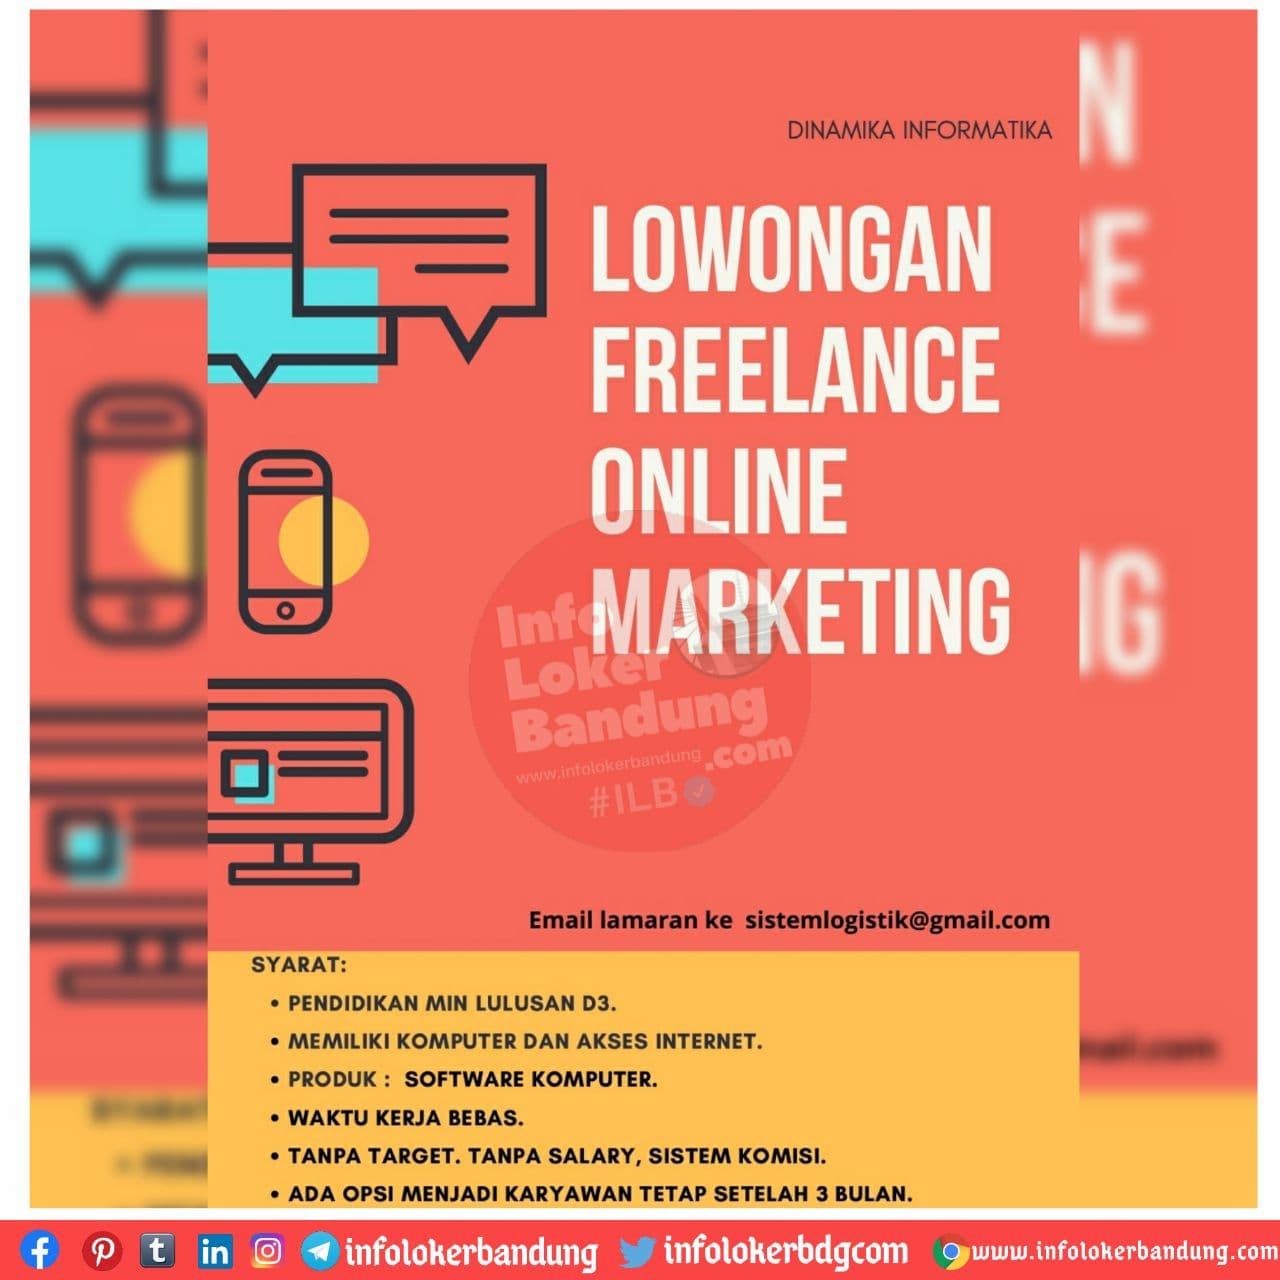 Lowongan Kerja Freelance Online Marketing Dinamika Informatika Bandung November 2020